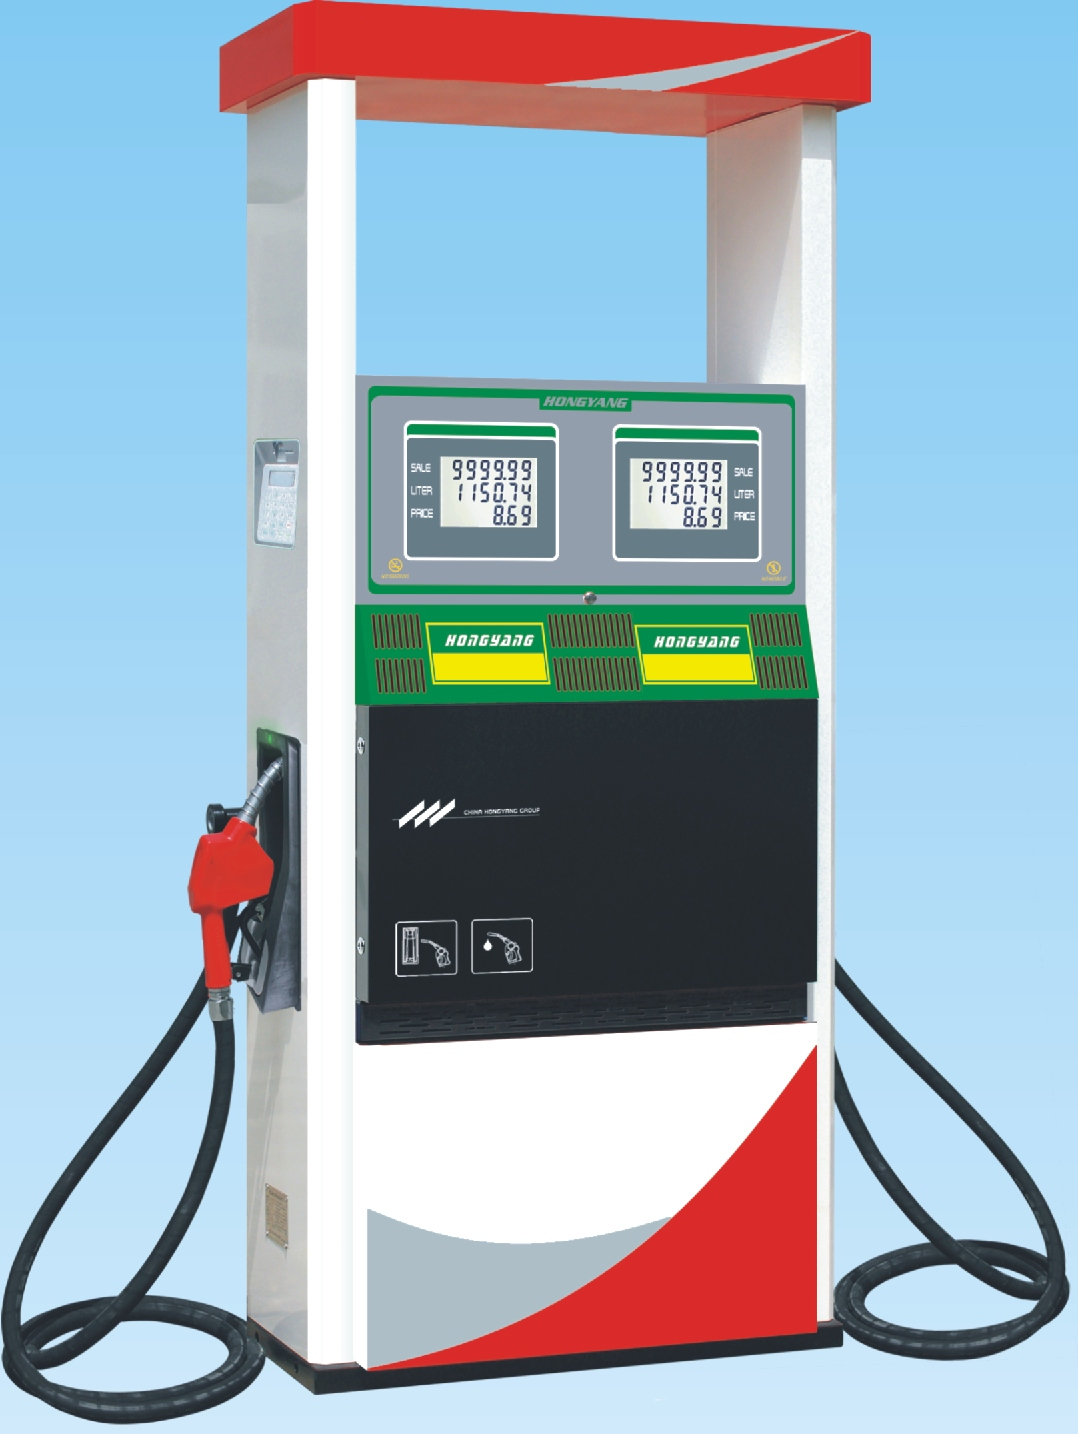 Measuring system of fuel dispenser